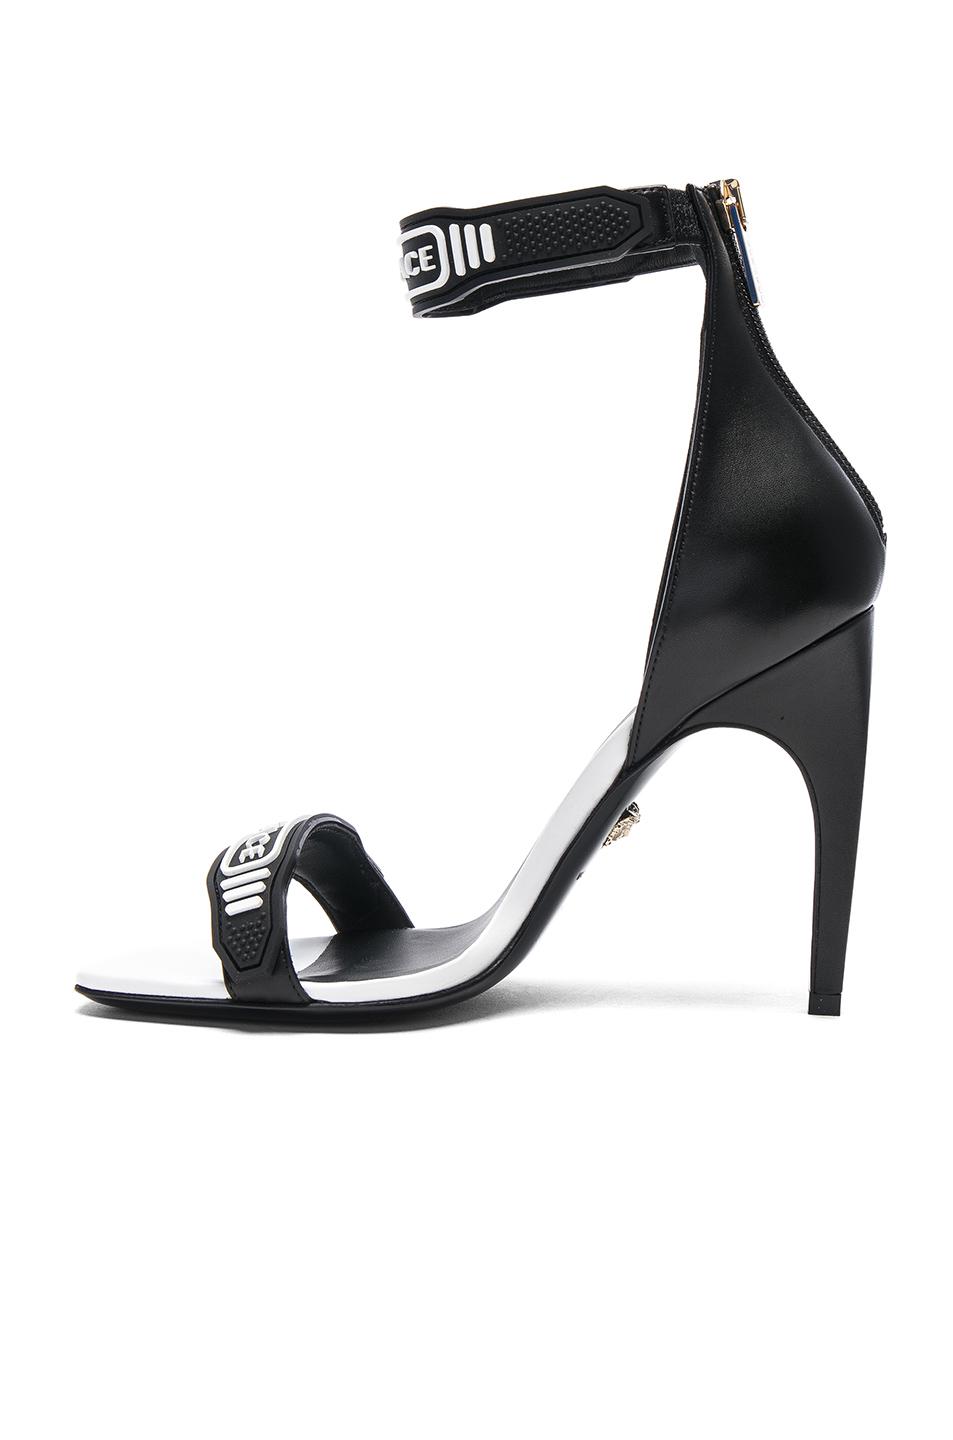 versace ankle strap heels